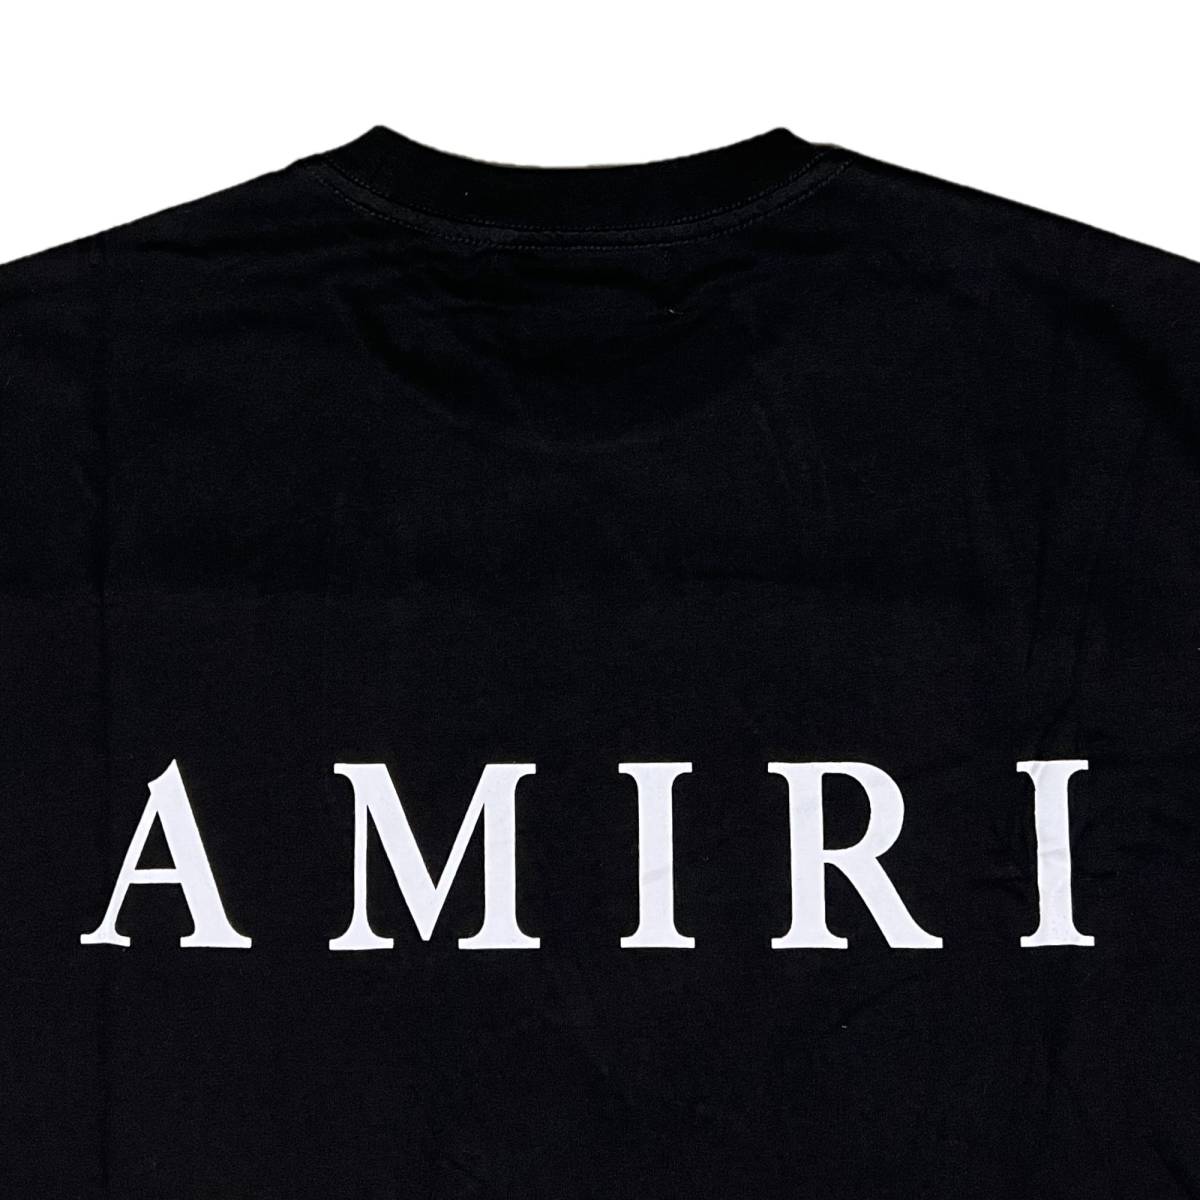 並行輸入品] AMIRI アミリ MA CORE ロゴ 半袖 Tシャツ (ブラック) (L 